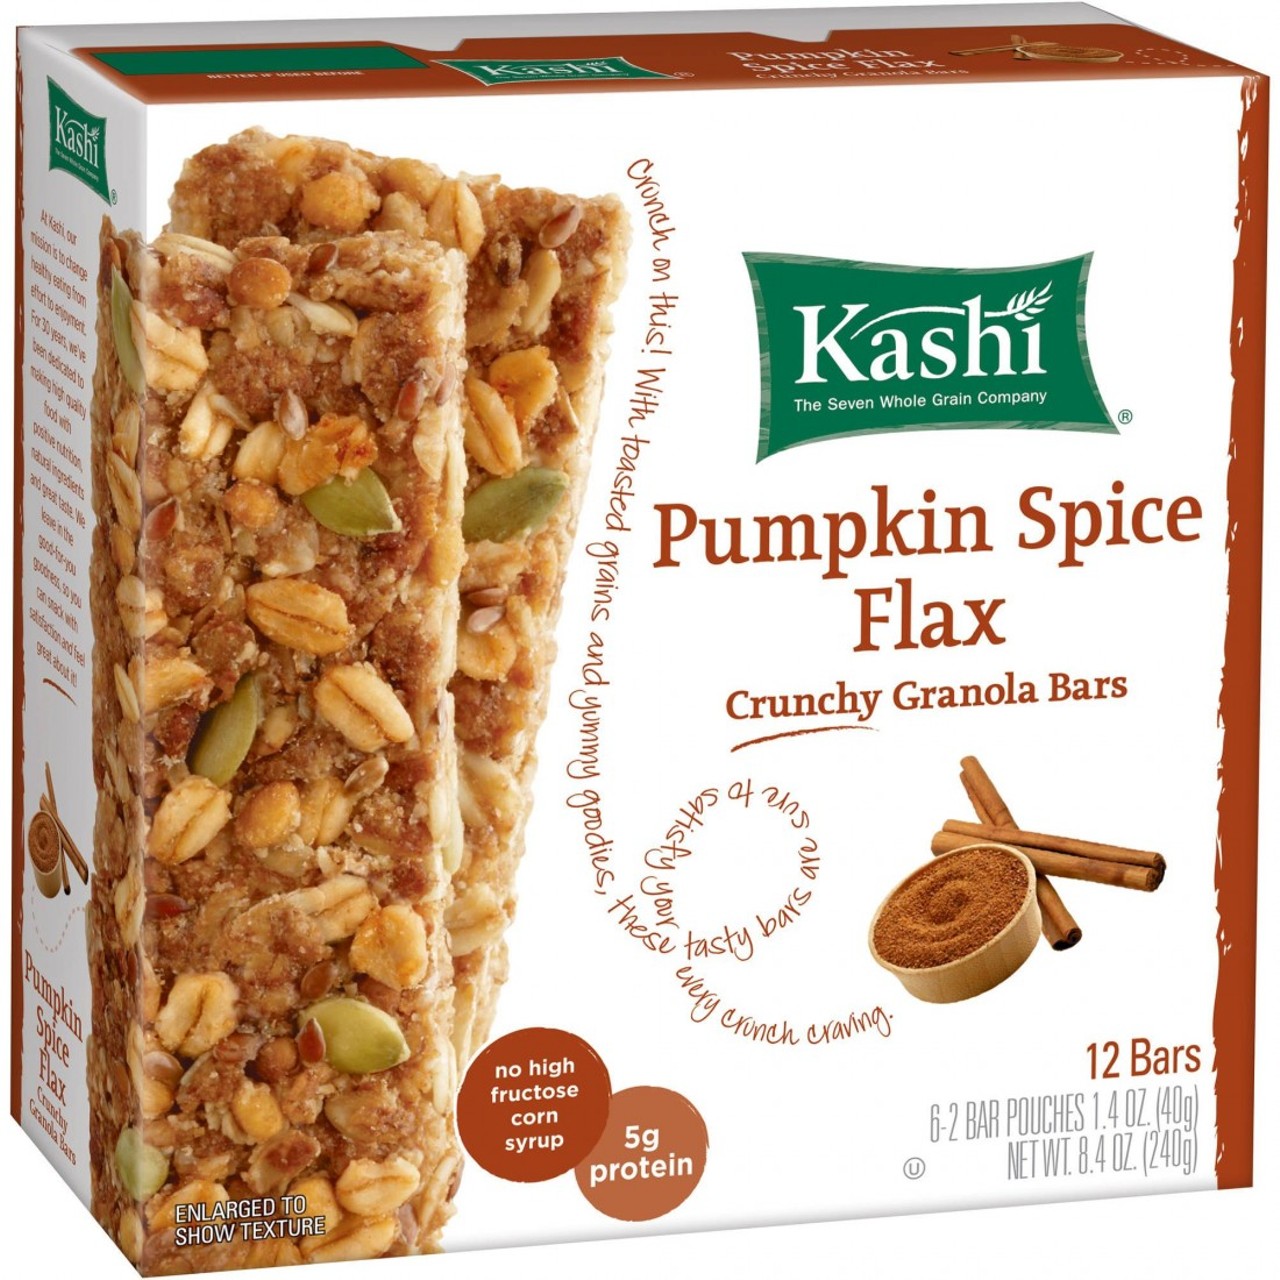 Kashi Pumpkin Spice Flax Granola Bars
Walmart